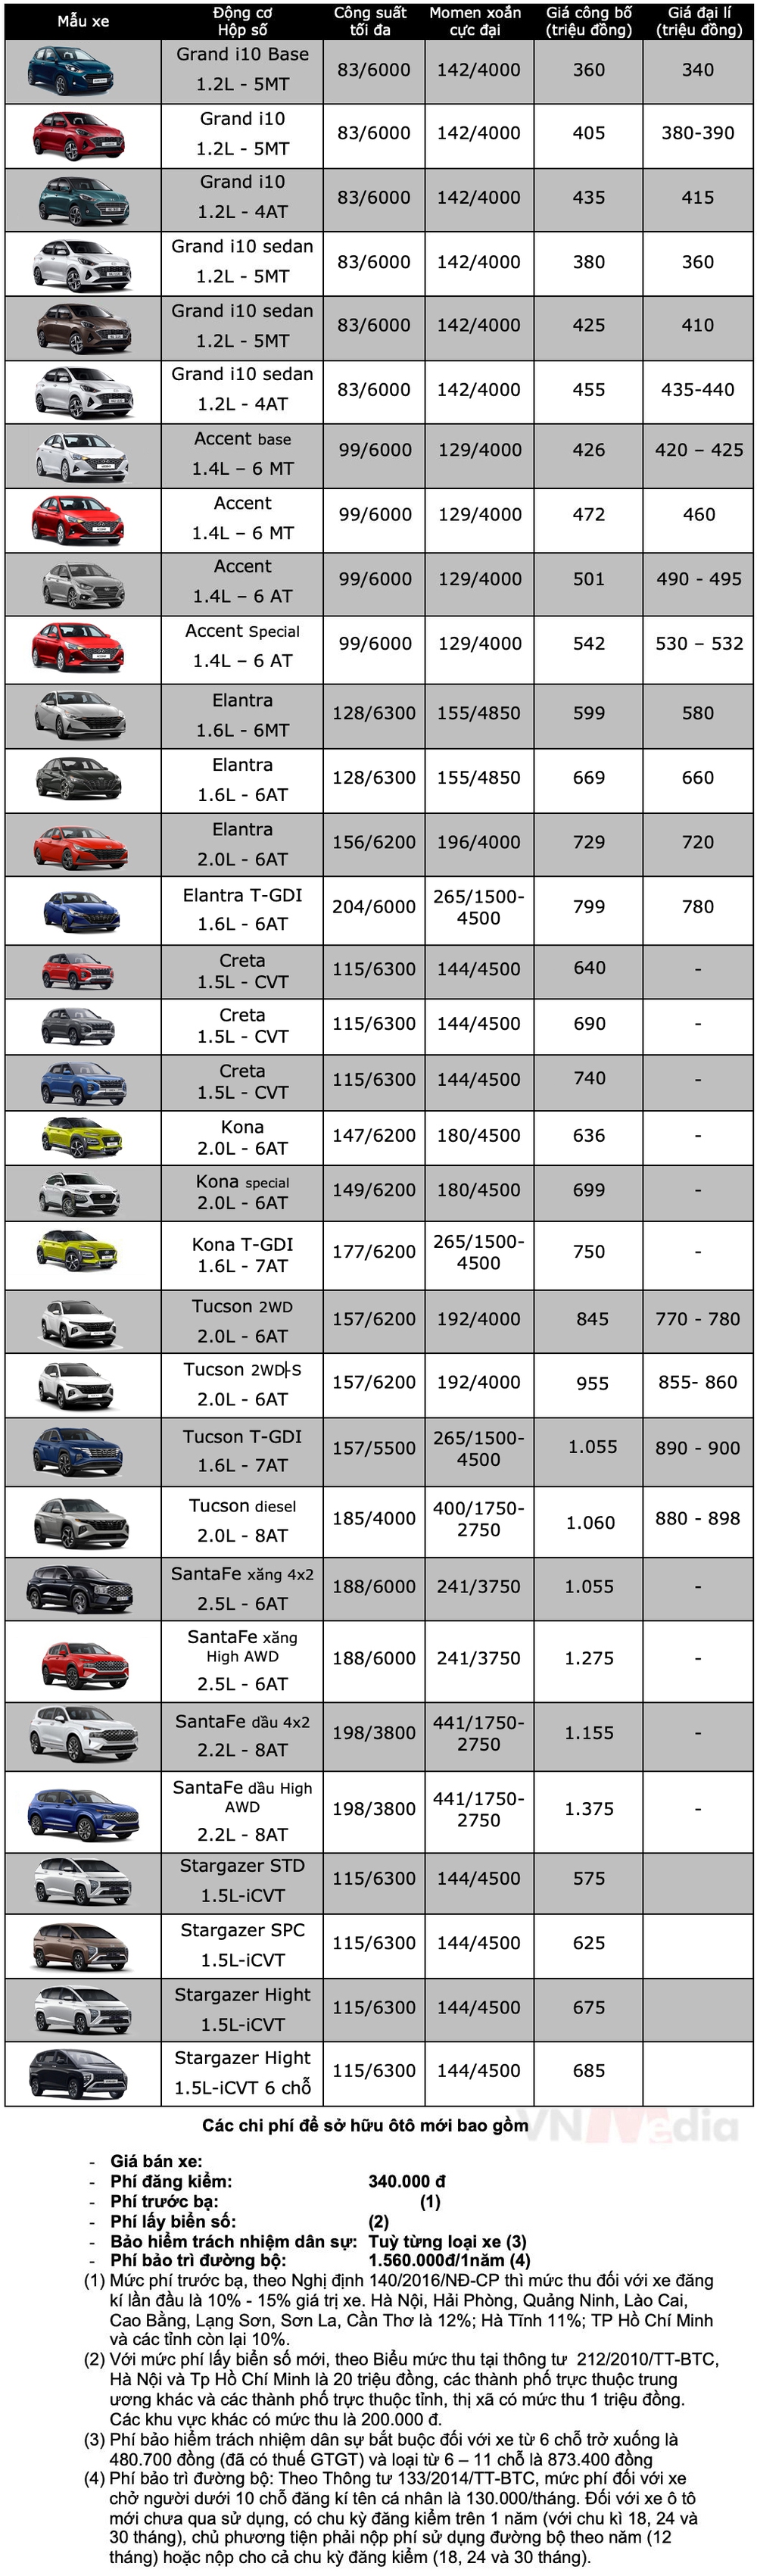 Bảng giá xe Hyundai tháng 2: Hyundai SantaFe giảm giá tới 135 triệu đồng - Ảnh 2.